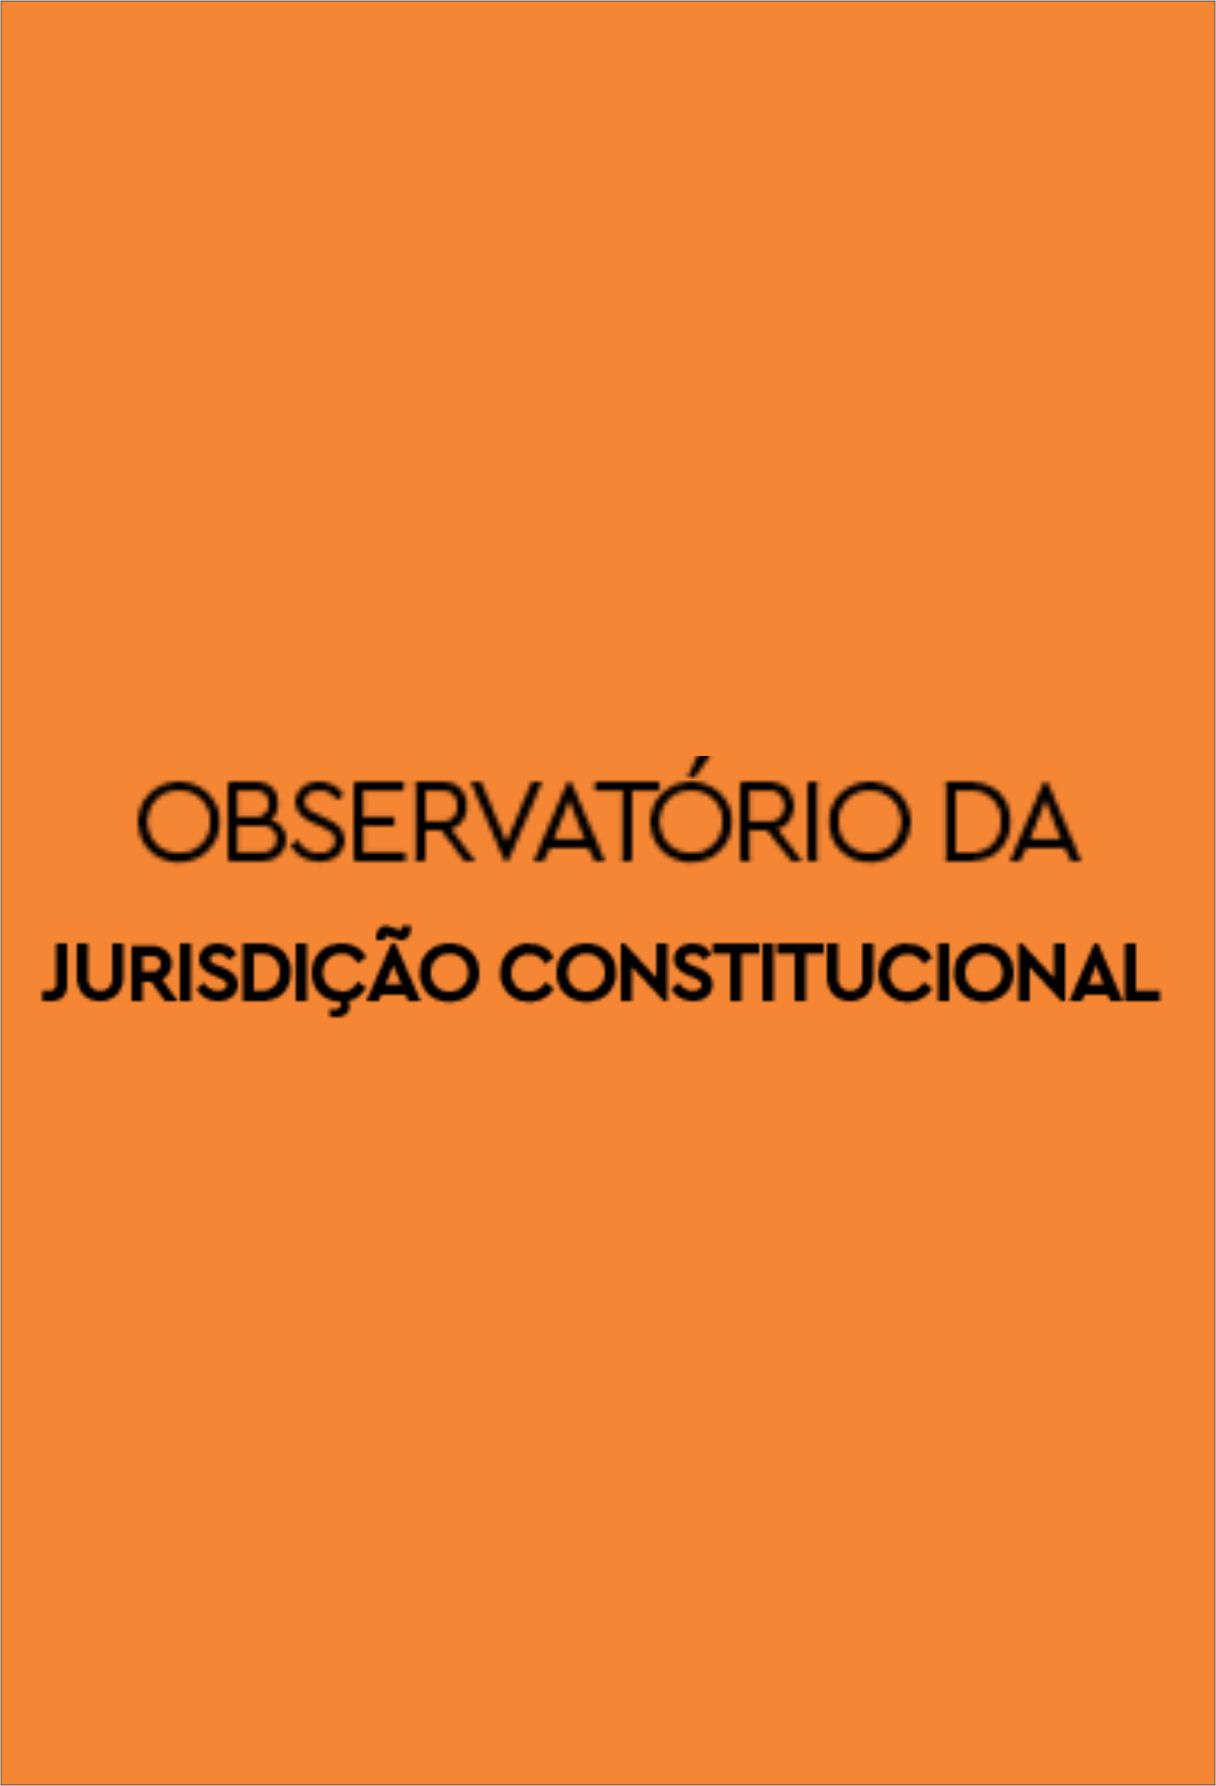 Capa: Observatório da Jurisdição Constitucional